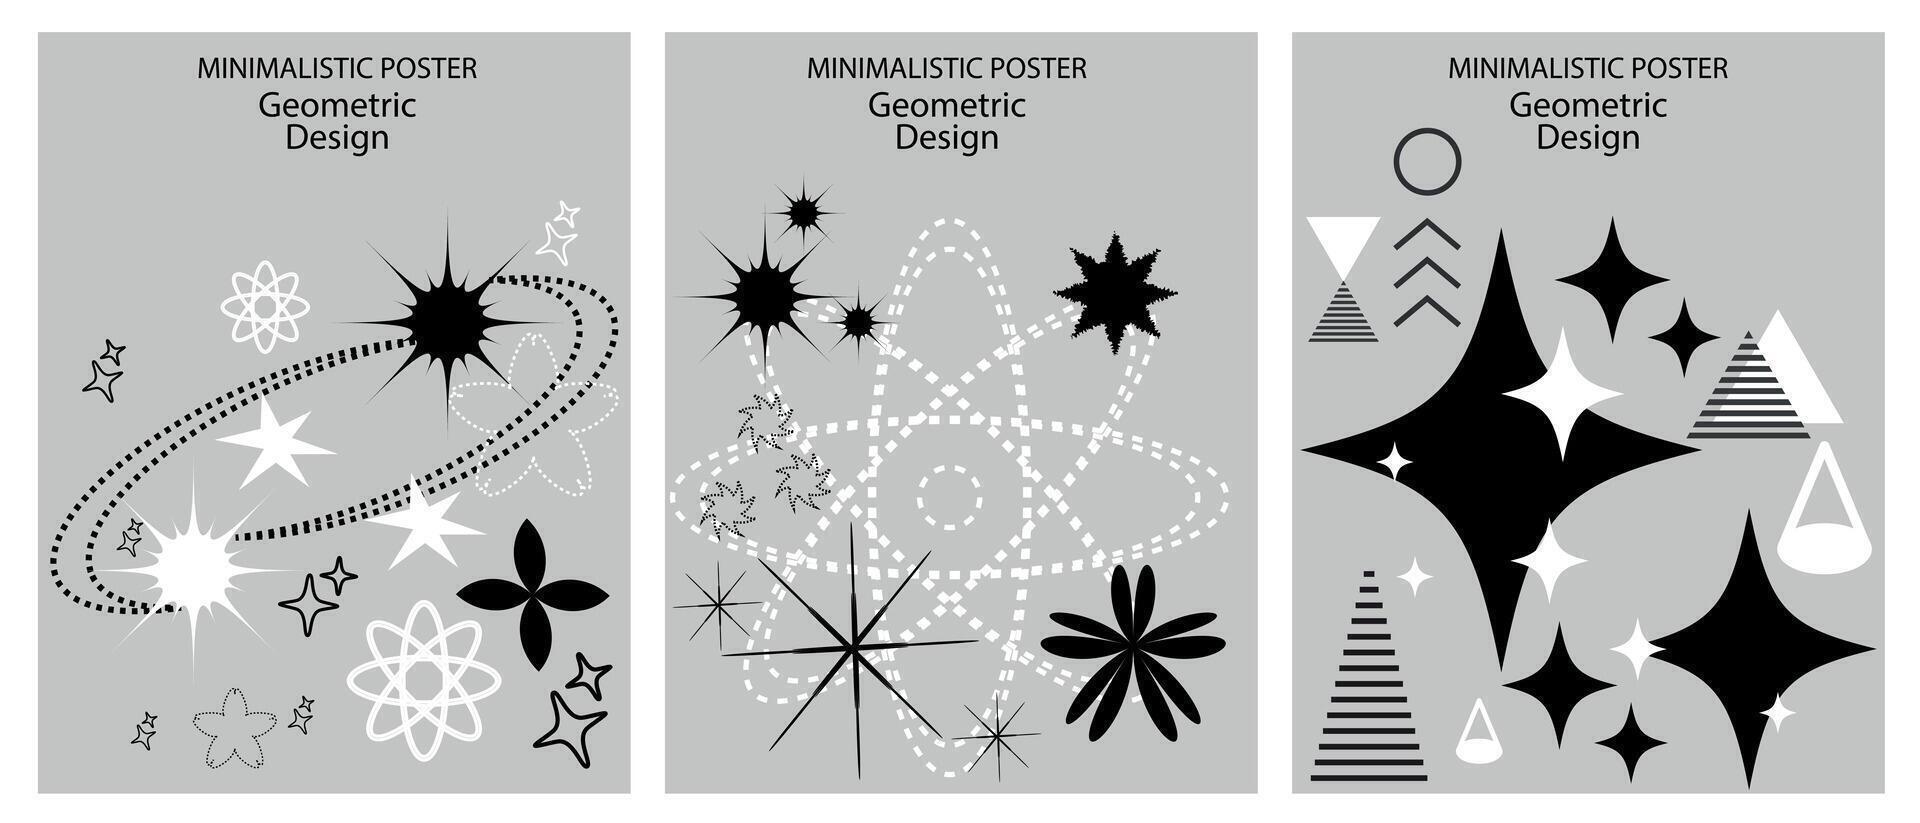 retro minimalistisk posters med enkel geometrisk former formning grafik. trogen modern design, modern stil i svart och grå toner, inspirerad förbi brutalism. vektor. vektor